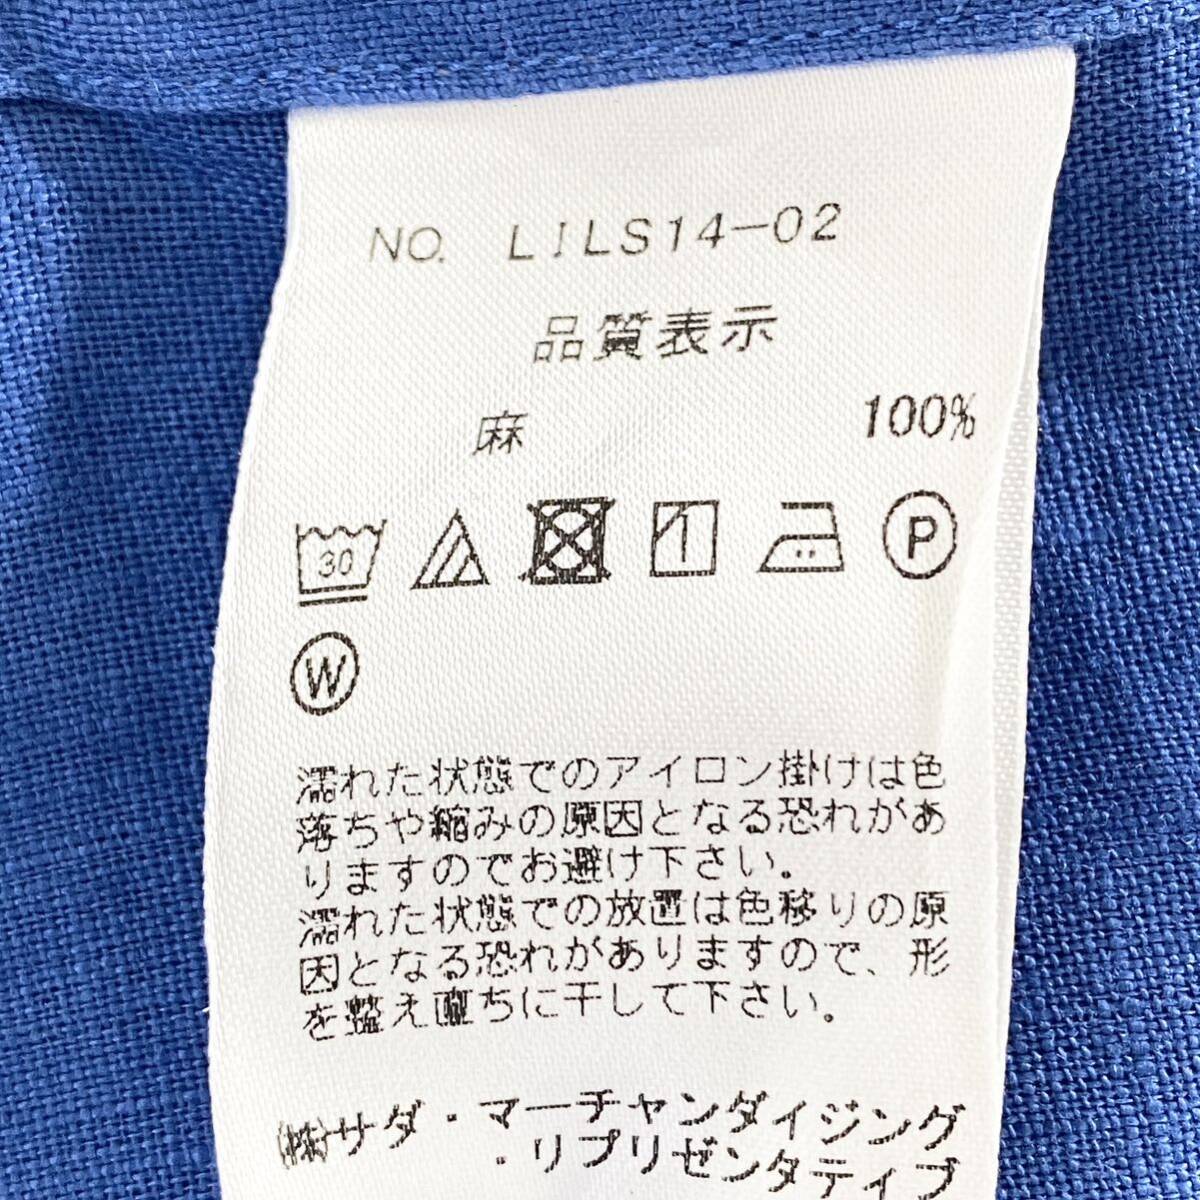 Hc22-12 日本製 Maker's Shirt 鎌倉シャツ Linen リネン 麻100% 長袖シャツ ドレスシャツ ドレスカジュアル 14.5/37 M相当 ブルー メンズ_画像6